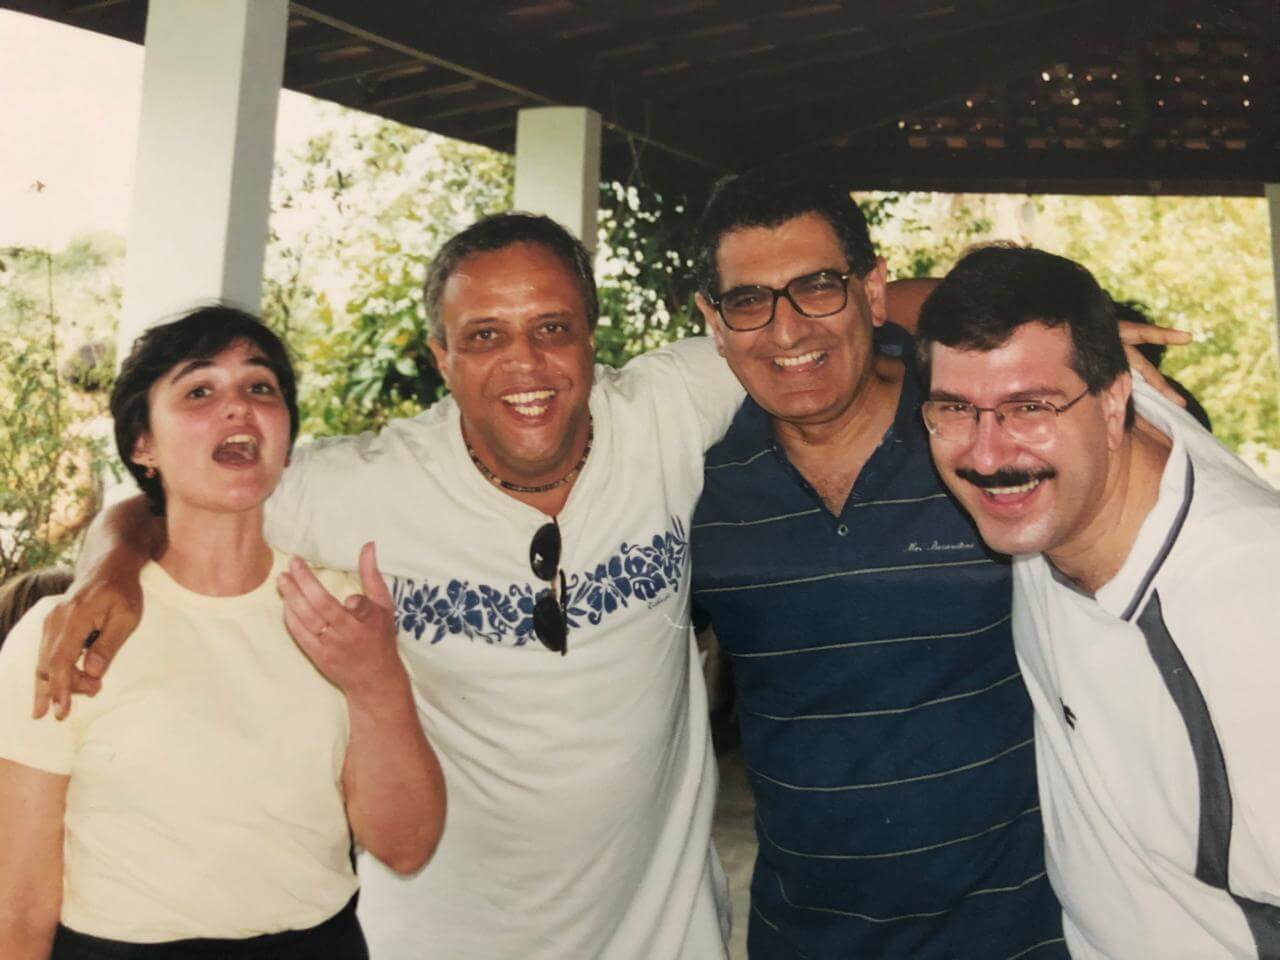 Márcia Menezes, Roberto de Souza, Vahan Agopyan e Geraldo Mekbkian na festa de Confraternização 1998.